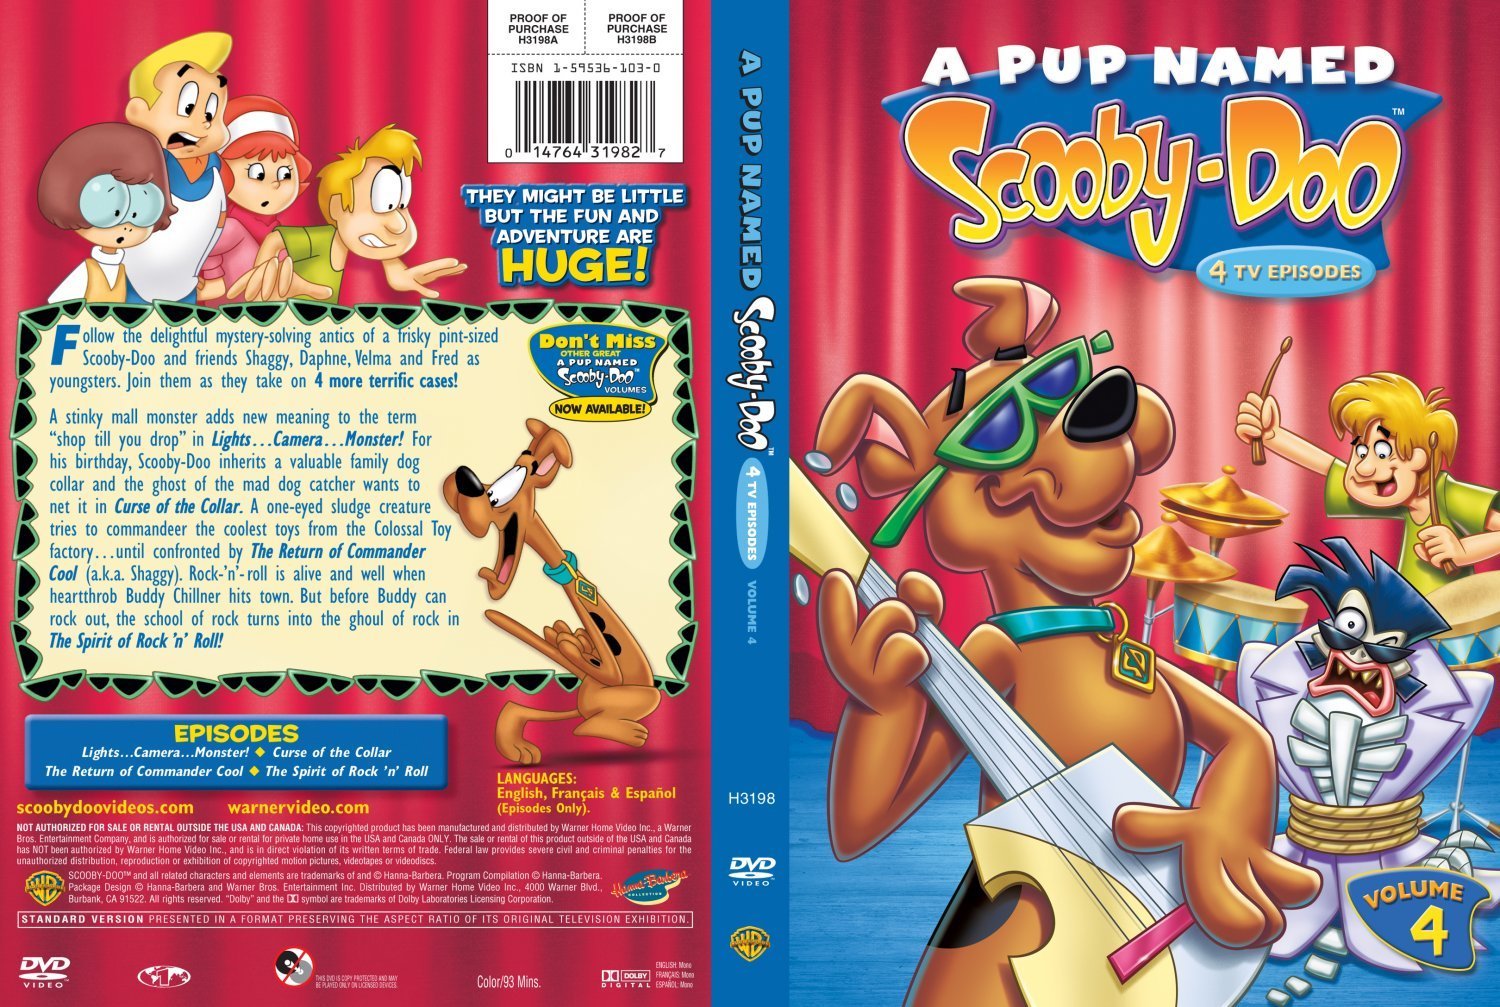 A Pup Named Scooby Doo Vol 4.